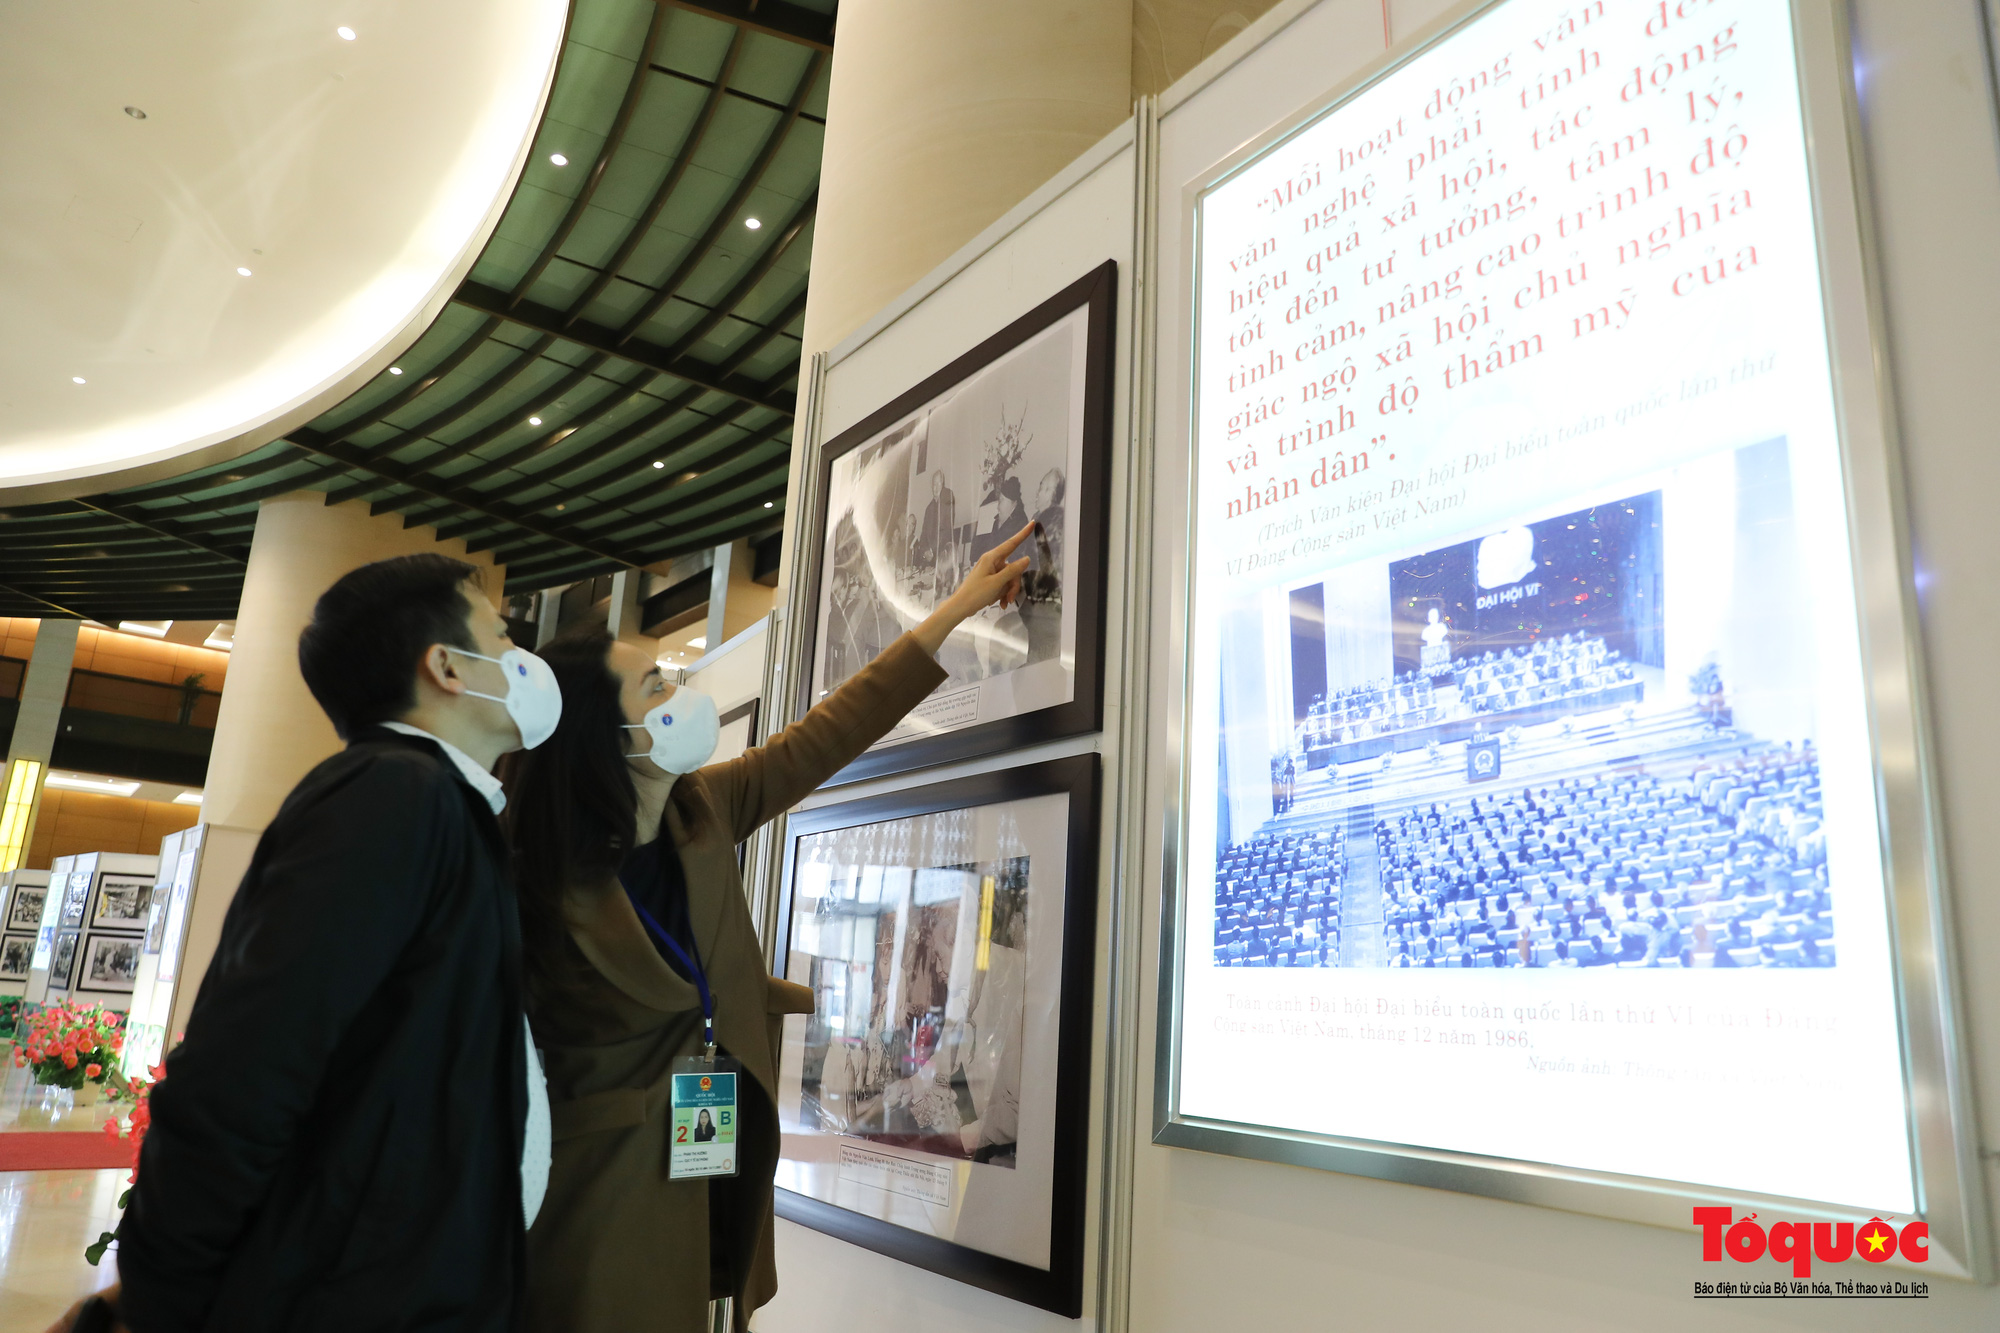 Triển lãm “Văn hóa soi đường cho quốc dân đi” trưng bày 320 tác phẩm ảnh nghệ thuật tiêu biểu - Ảnh 18.